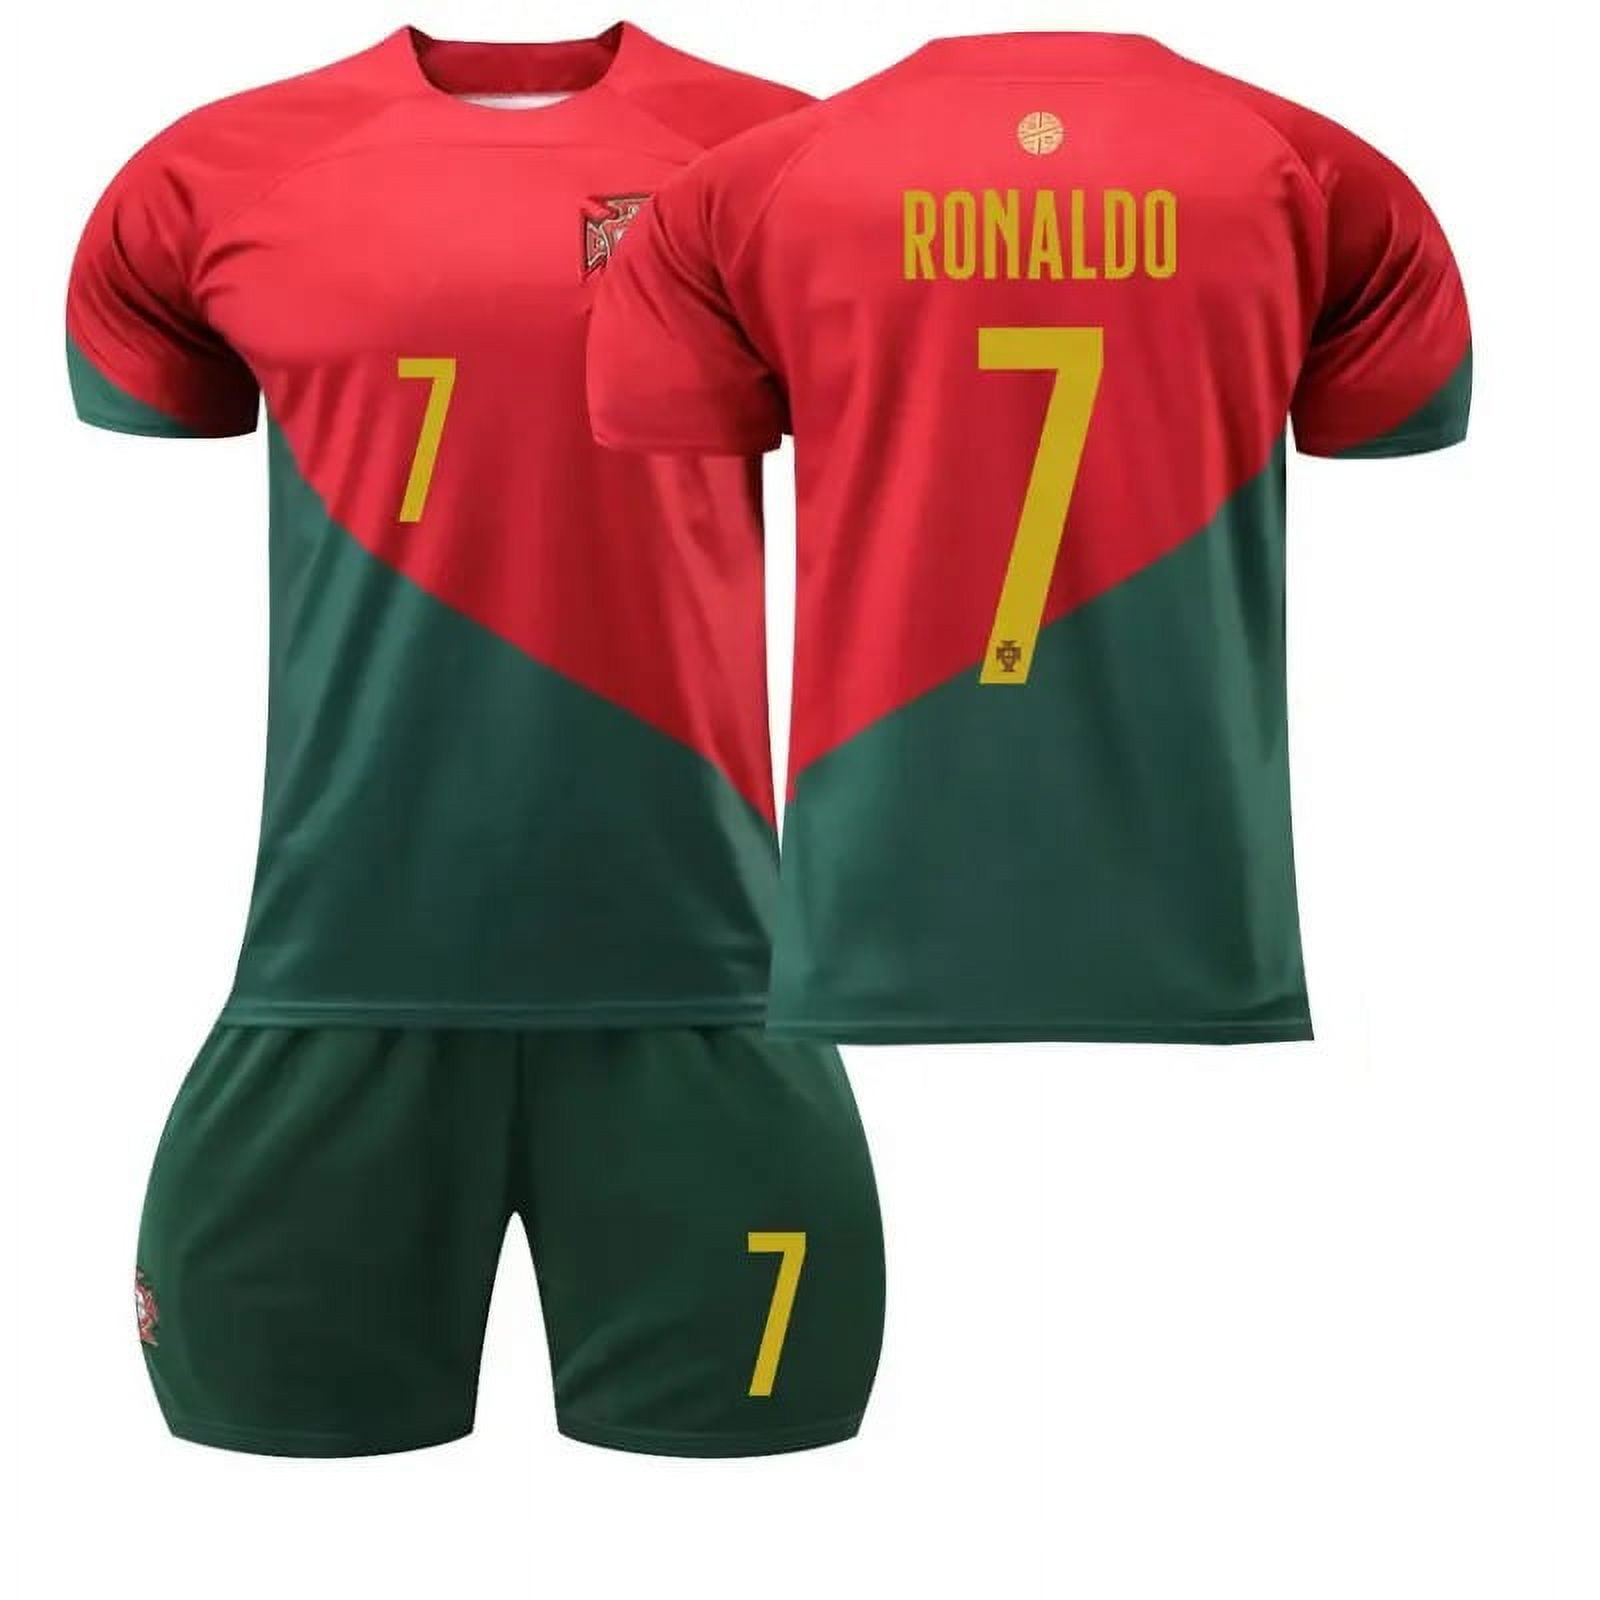 ronaldo jersey size 8